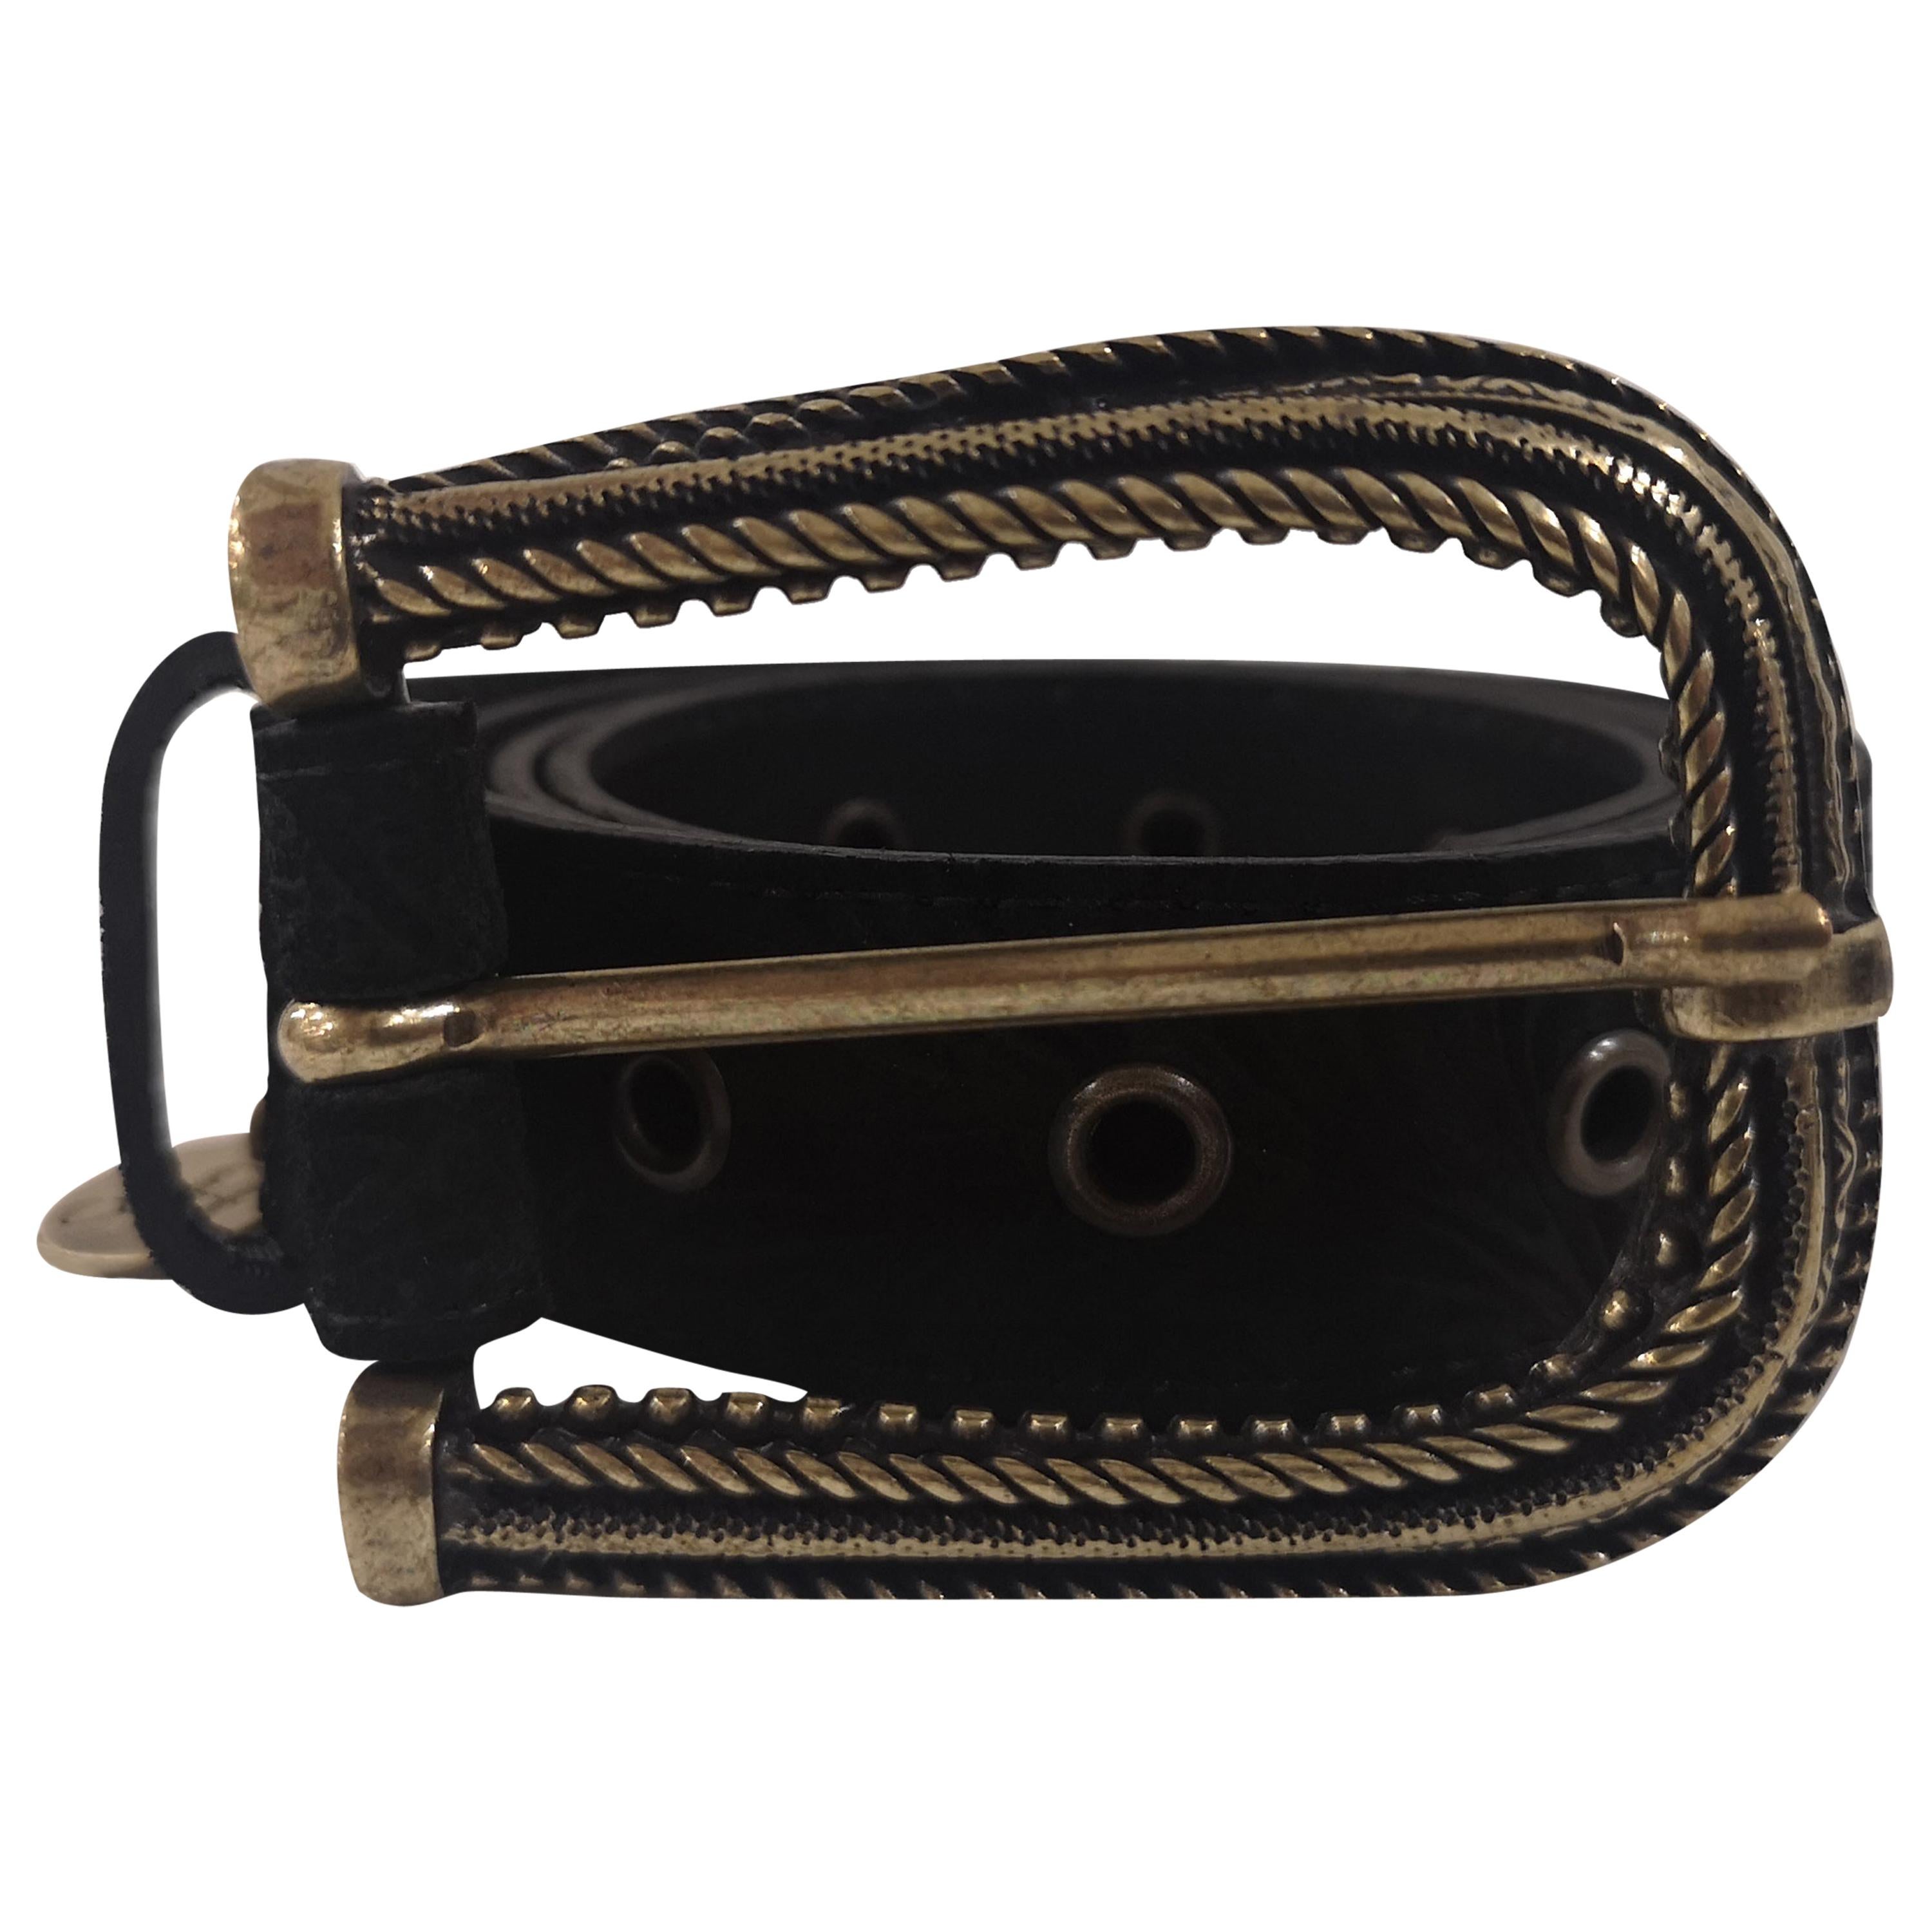 Black leather suede belt NWOT